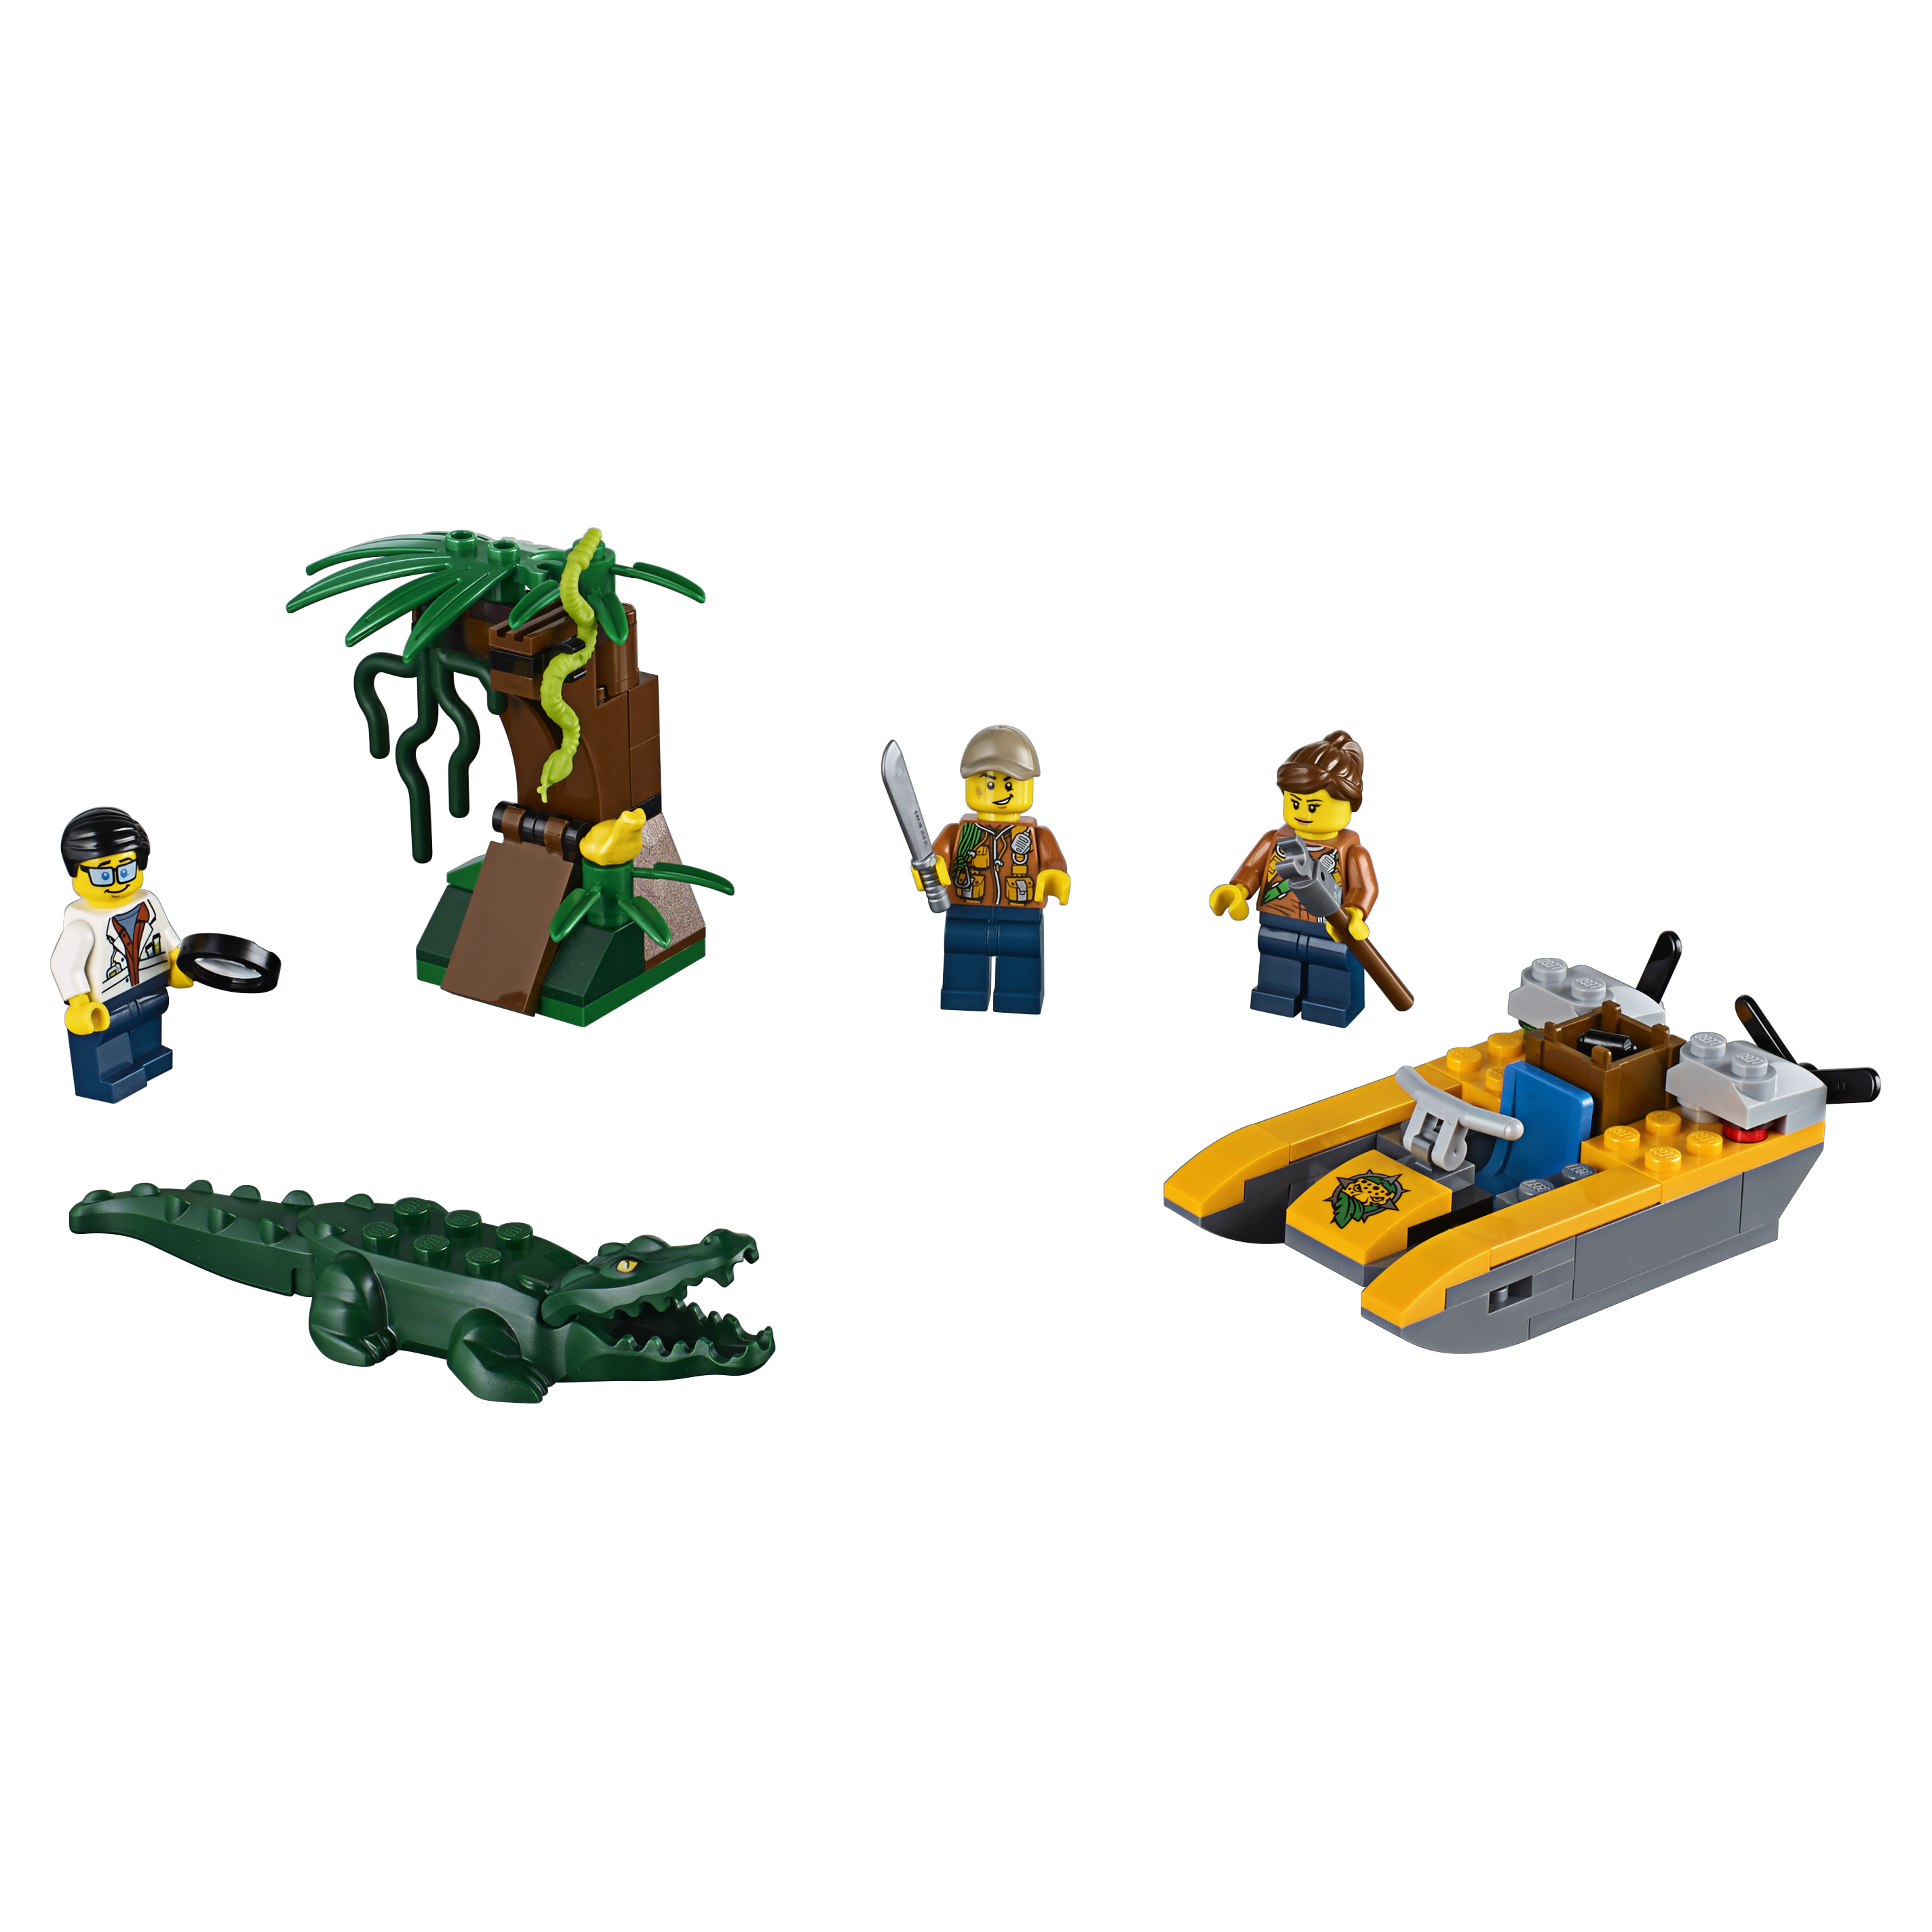 Конструктор LEGO City Jungle Explorers Набор Джунгли для начинающих (60157) шаманское путешествие руководство для начинающих